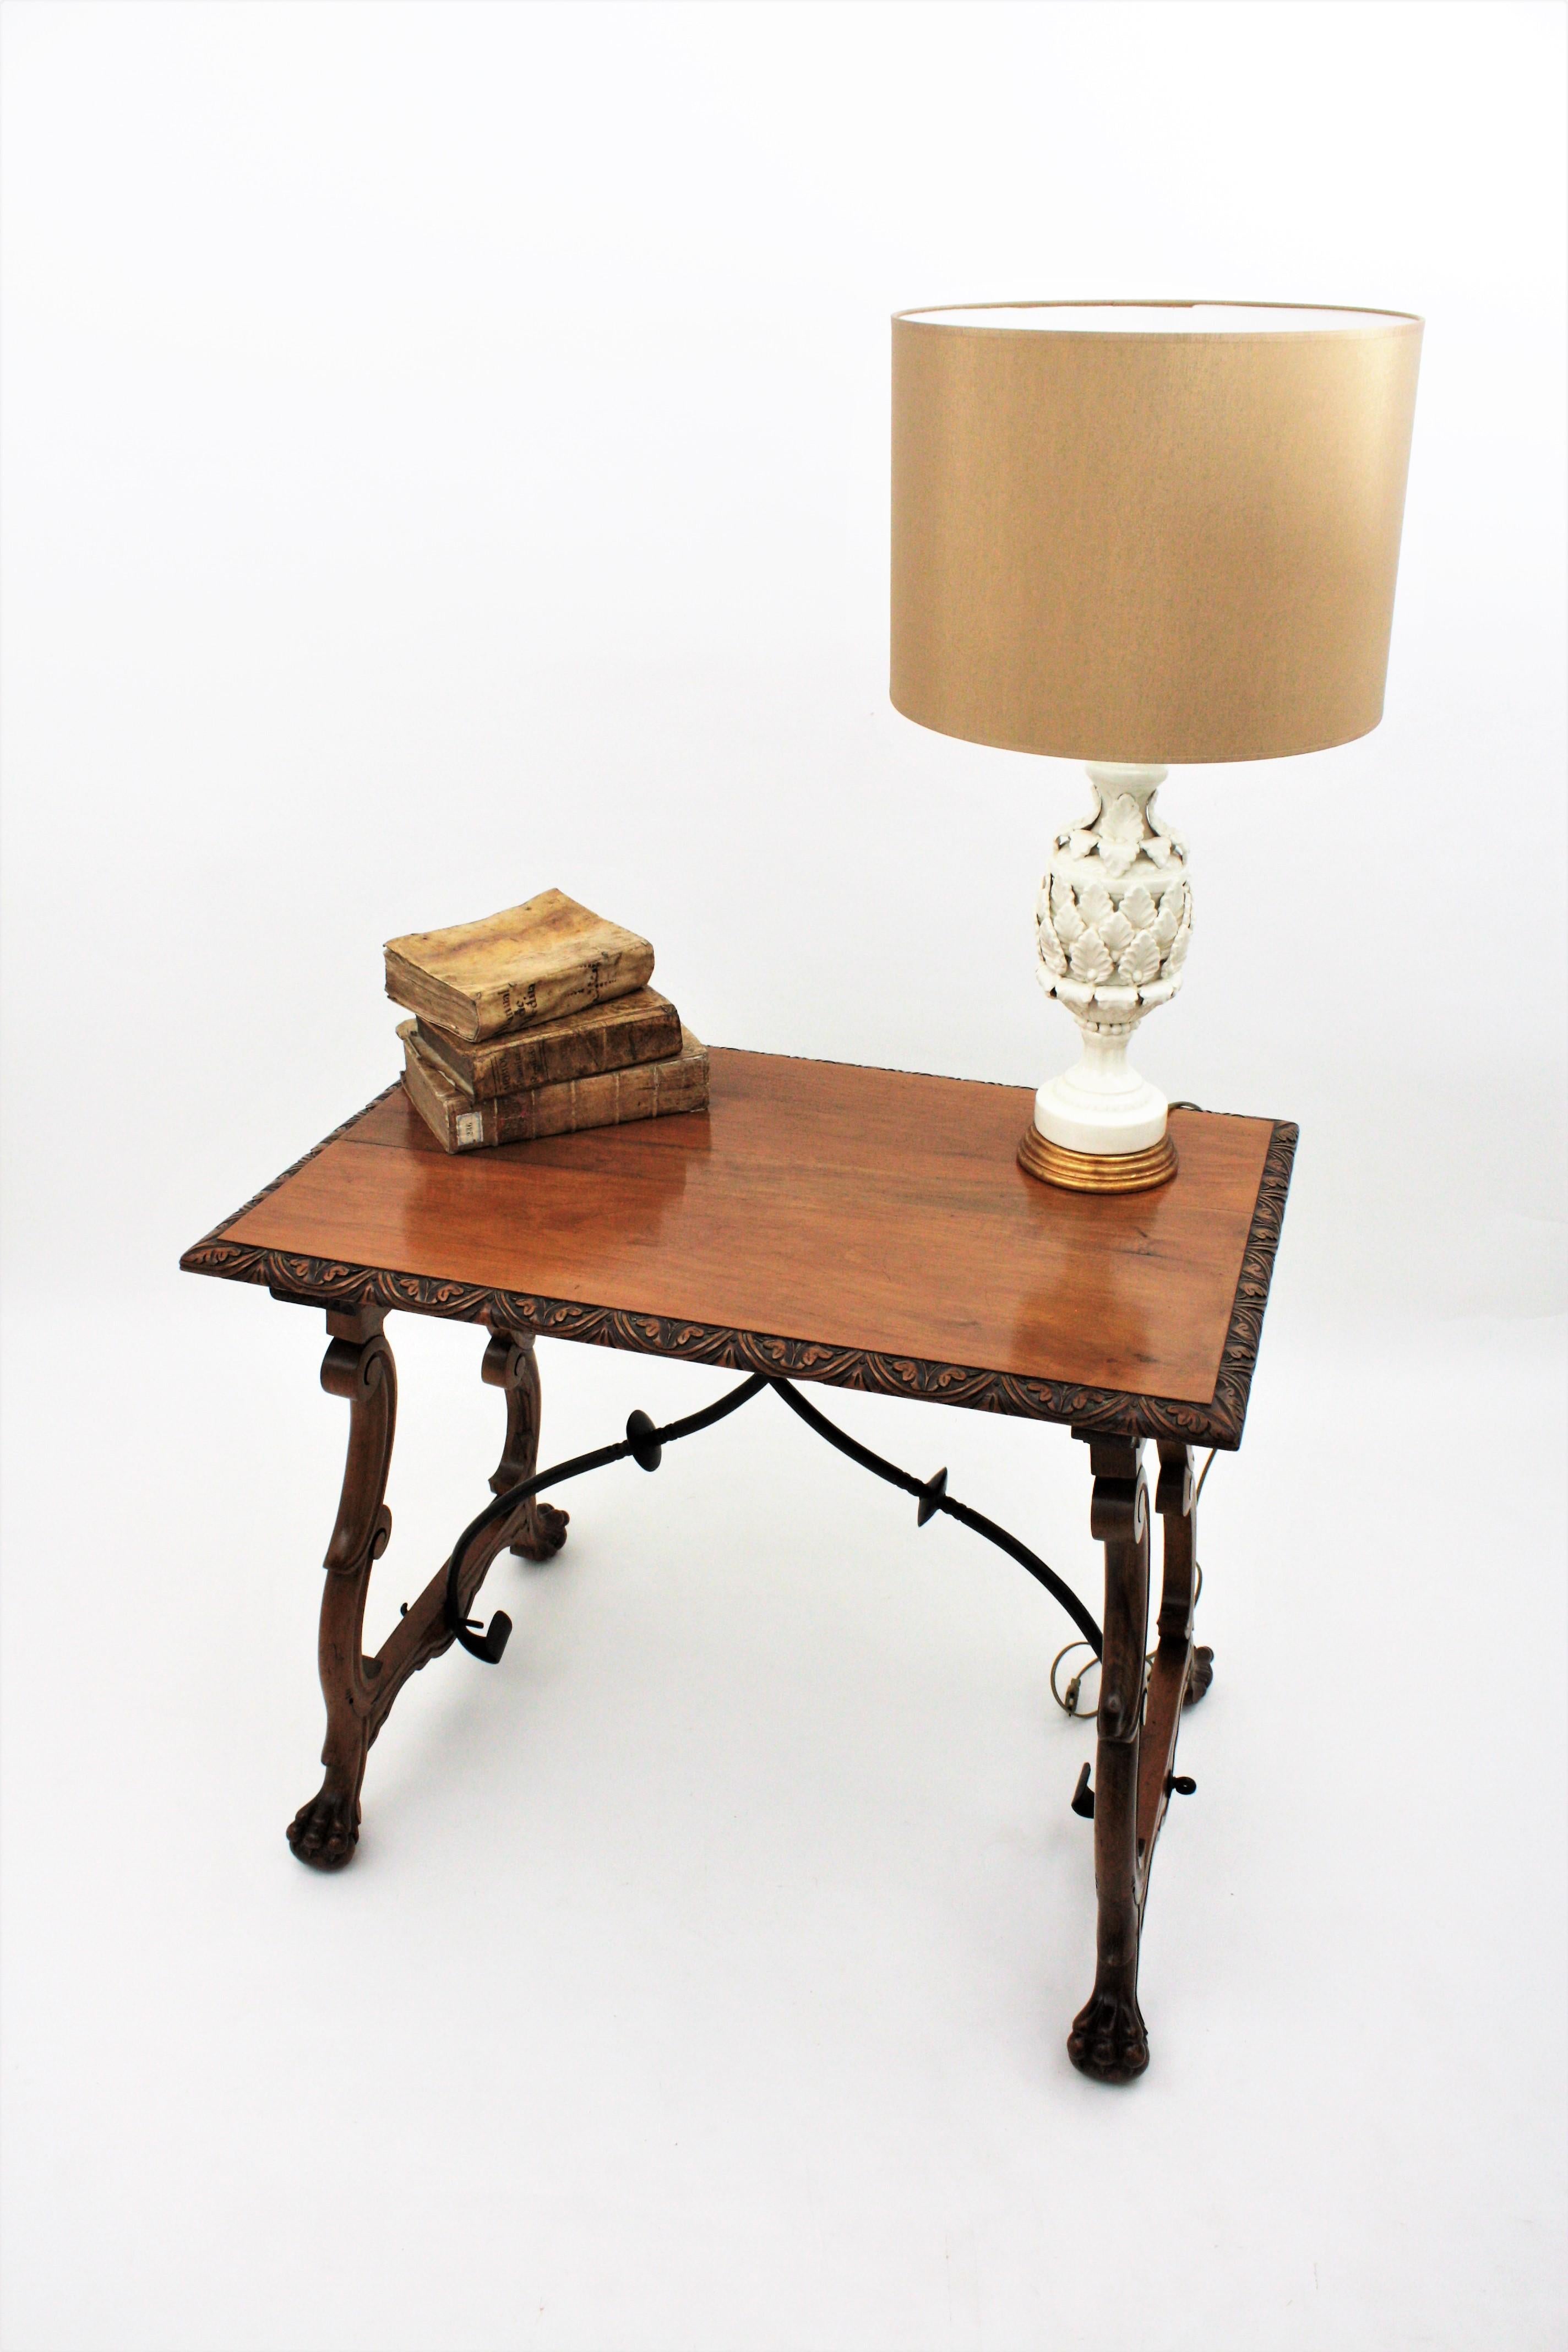 Spanish Manises Majolica White Glazed Ceramic Table Lamp on Giltwood Pedestal 5